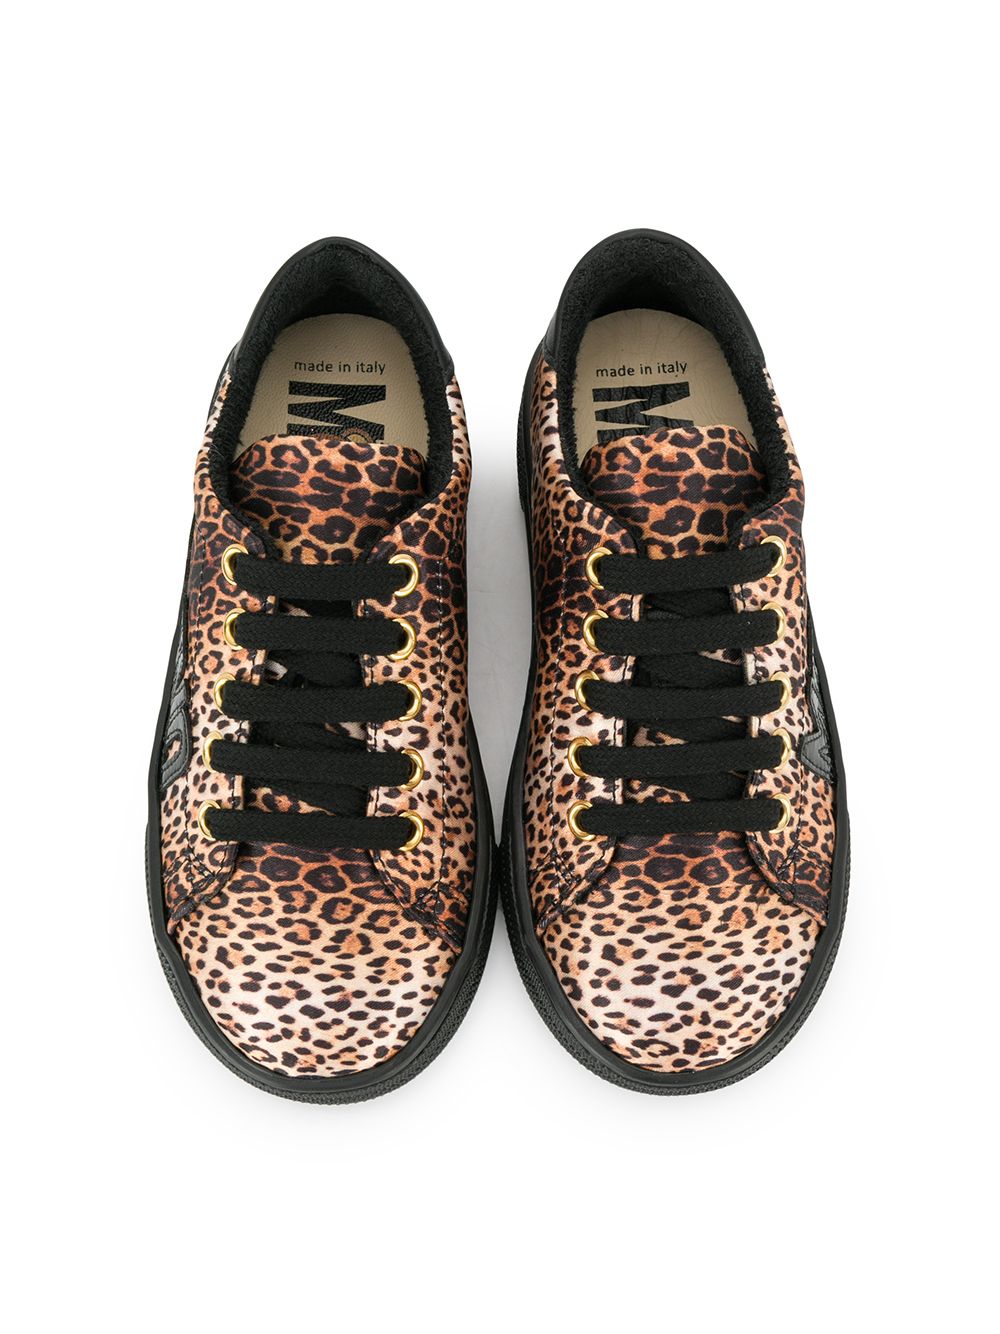 фото Moschino kids кроссовки с леопардовым принтом